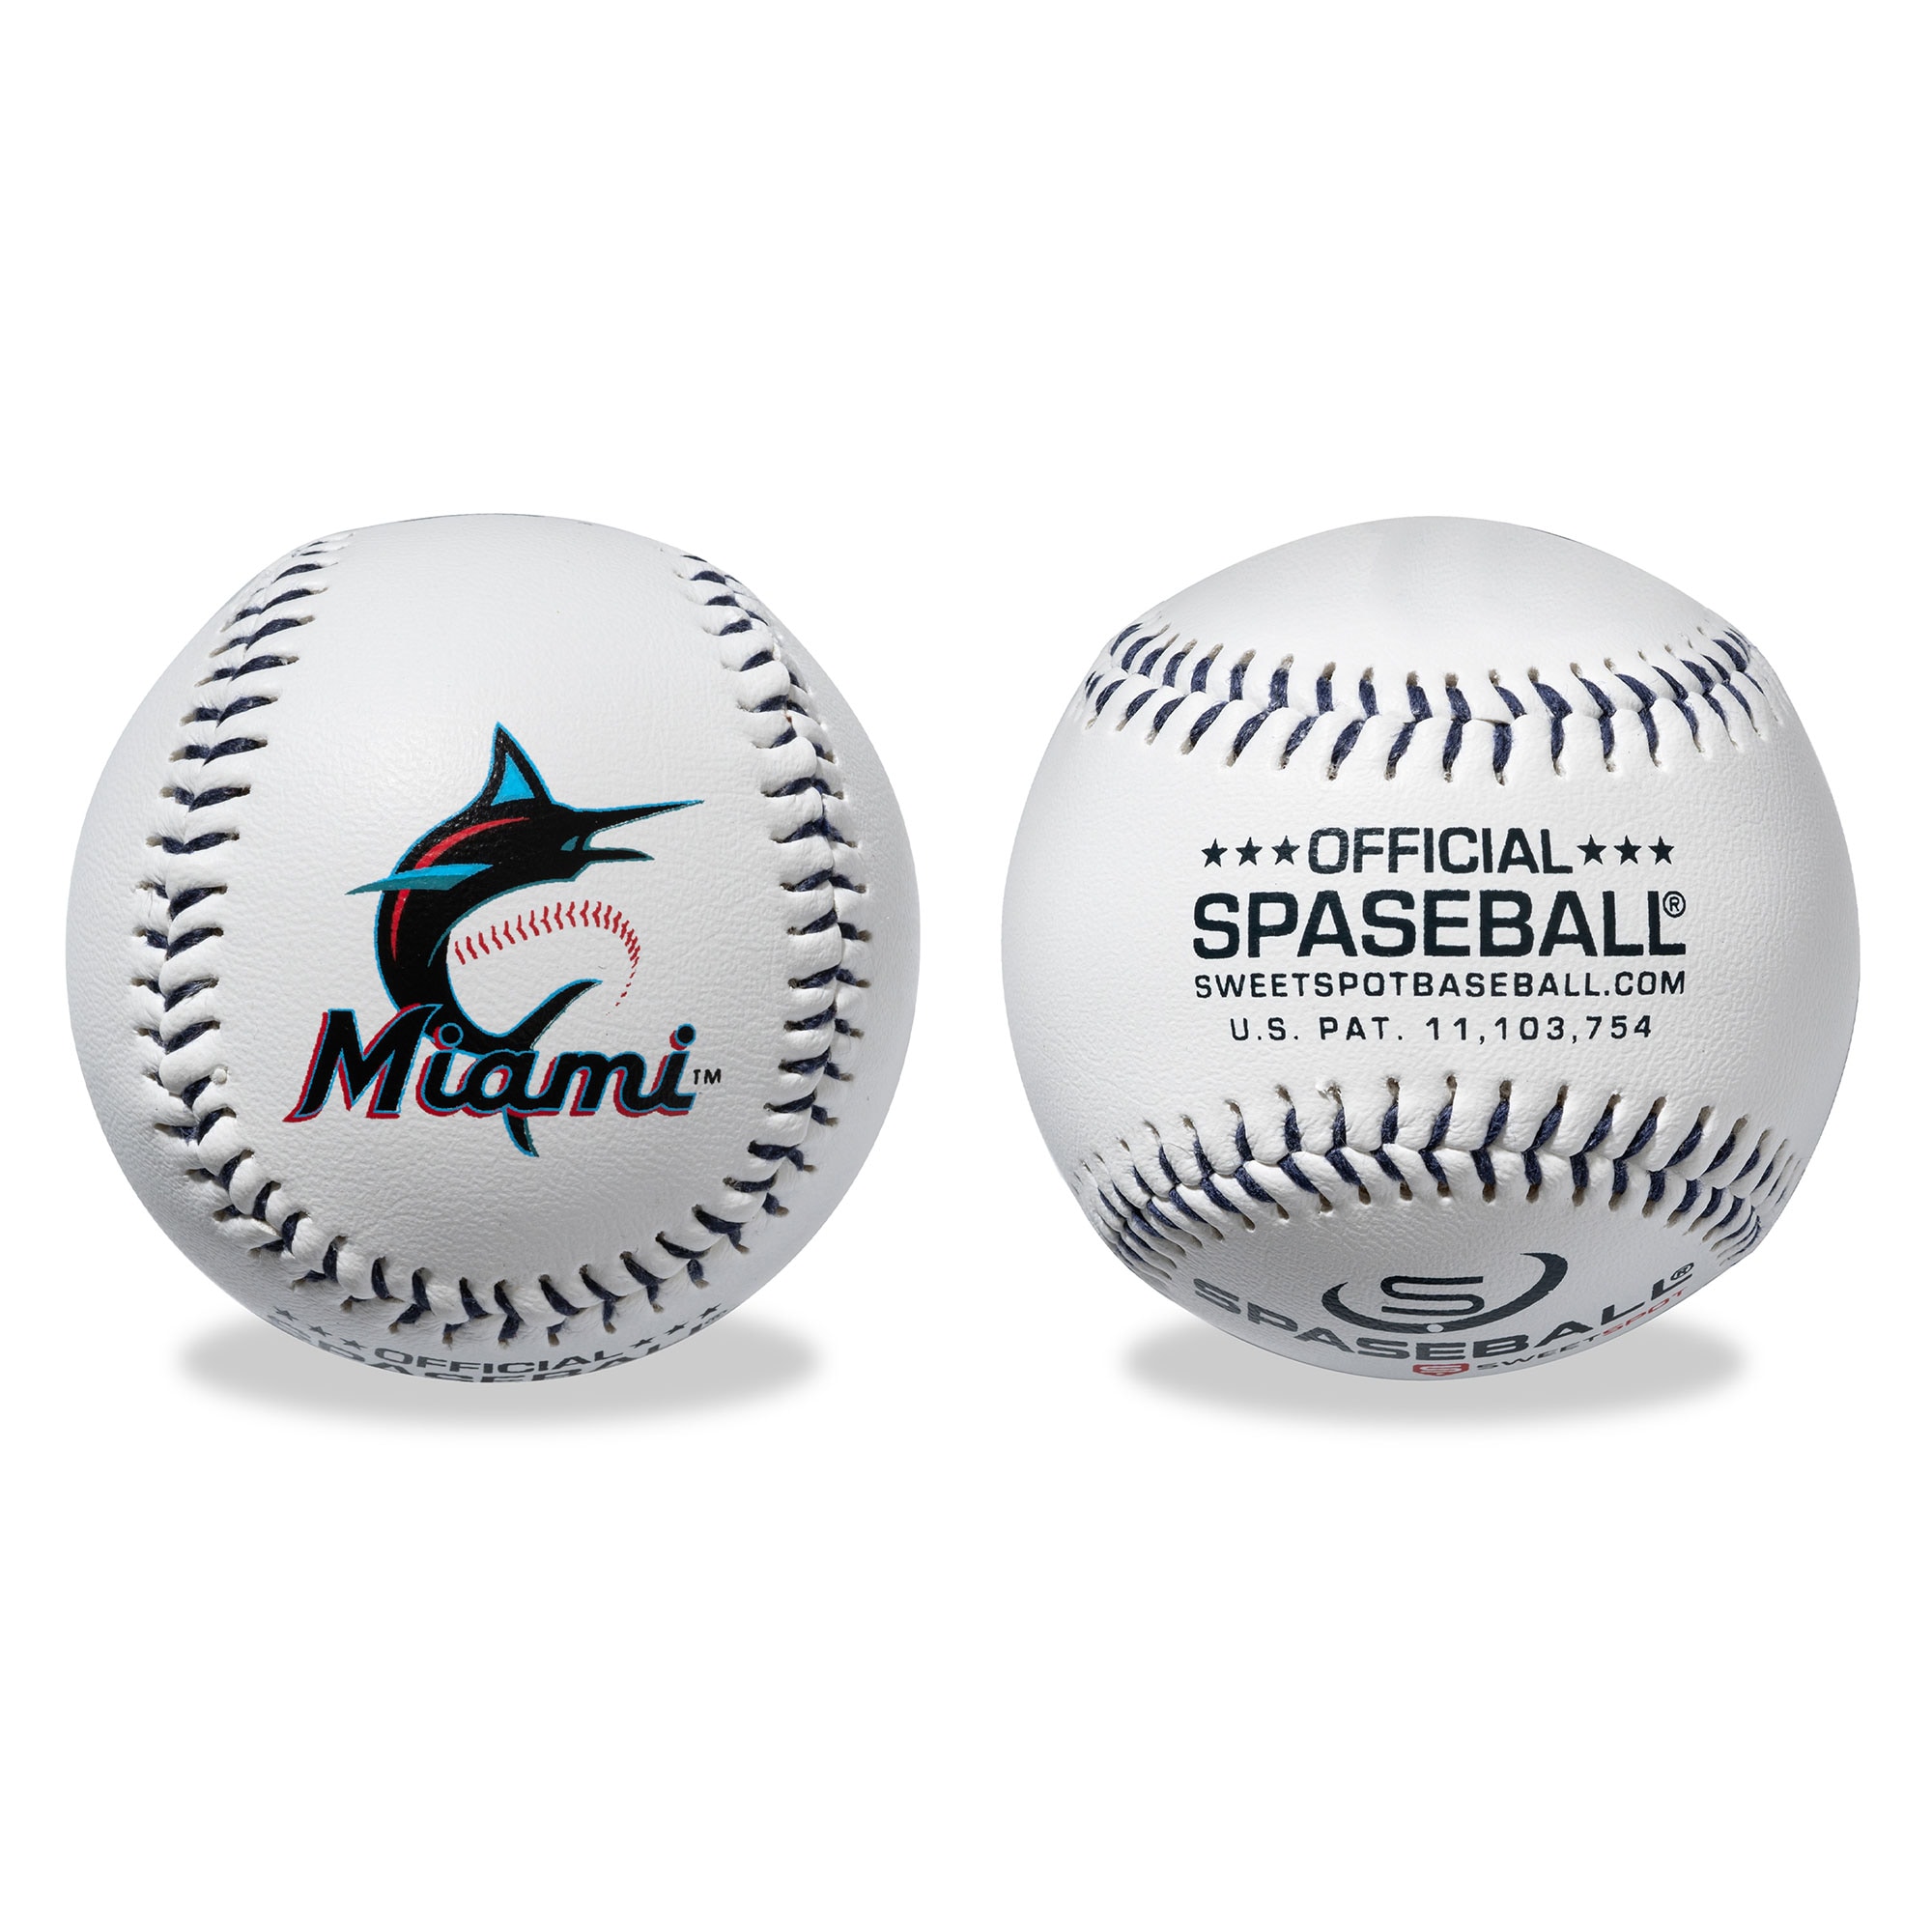 SweetSpot Baseball Miami Marlins Spaseball 2-Pack - image 1 of 5